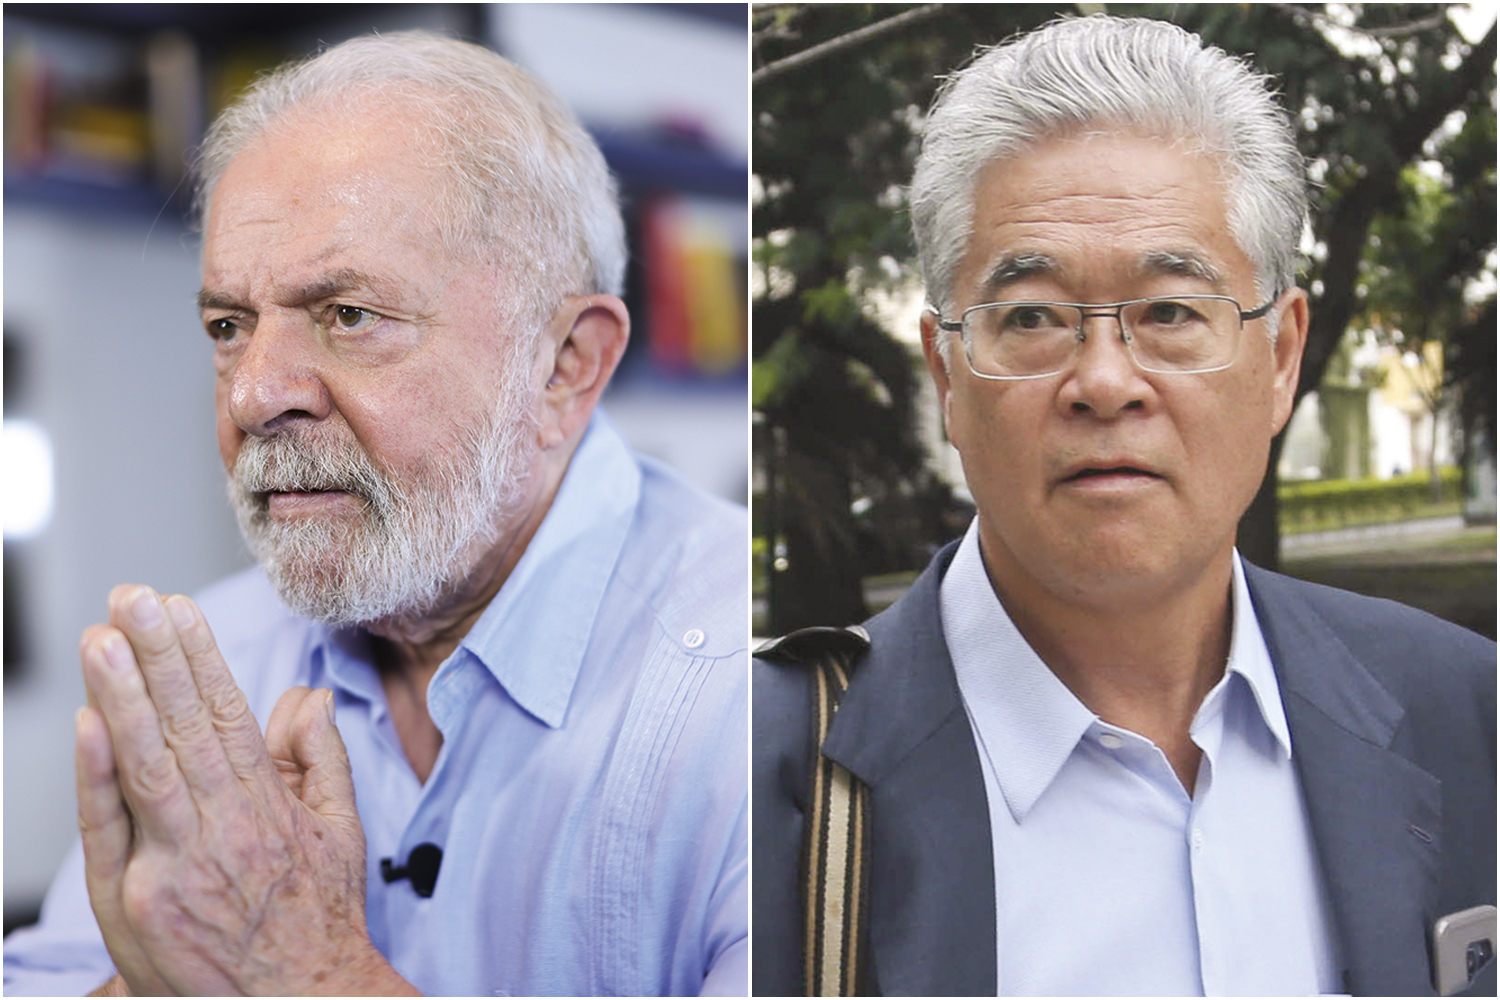 ALVOS - Lula e Paulo Okamotto: o braço direito do petista teria ameaçado Marcos Valério de morte caso ele tentasse incriminar o ex-presidente -